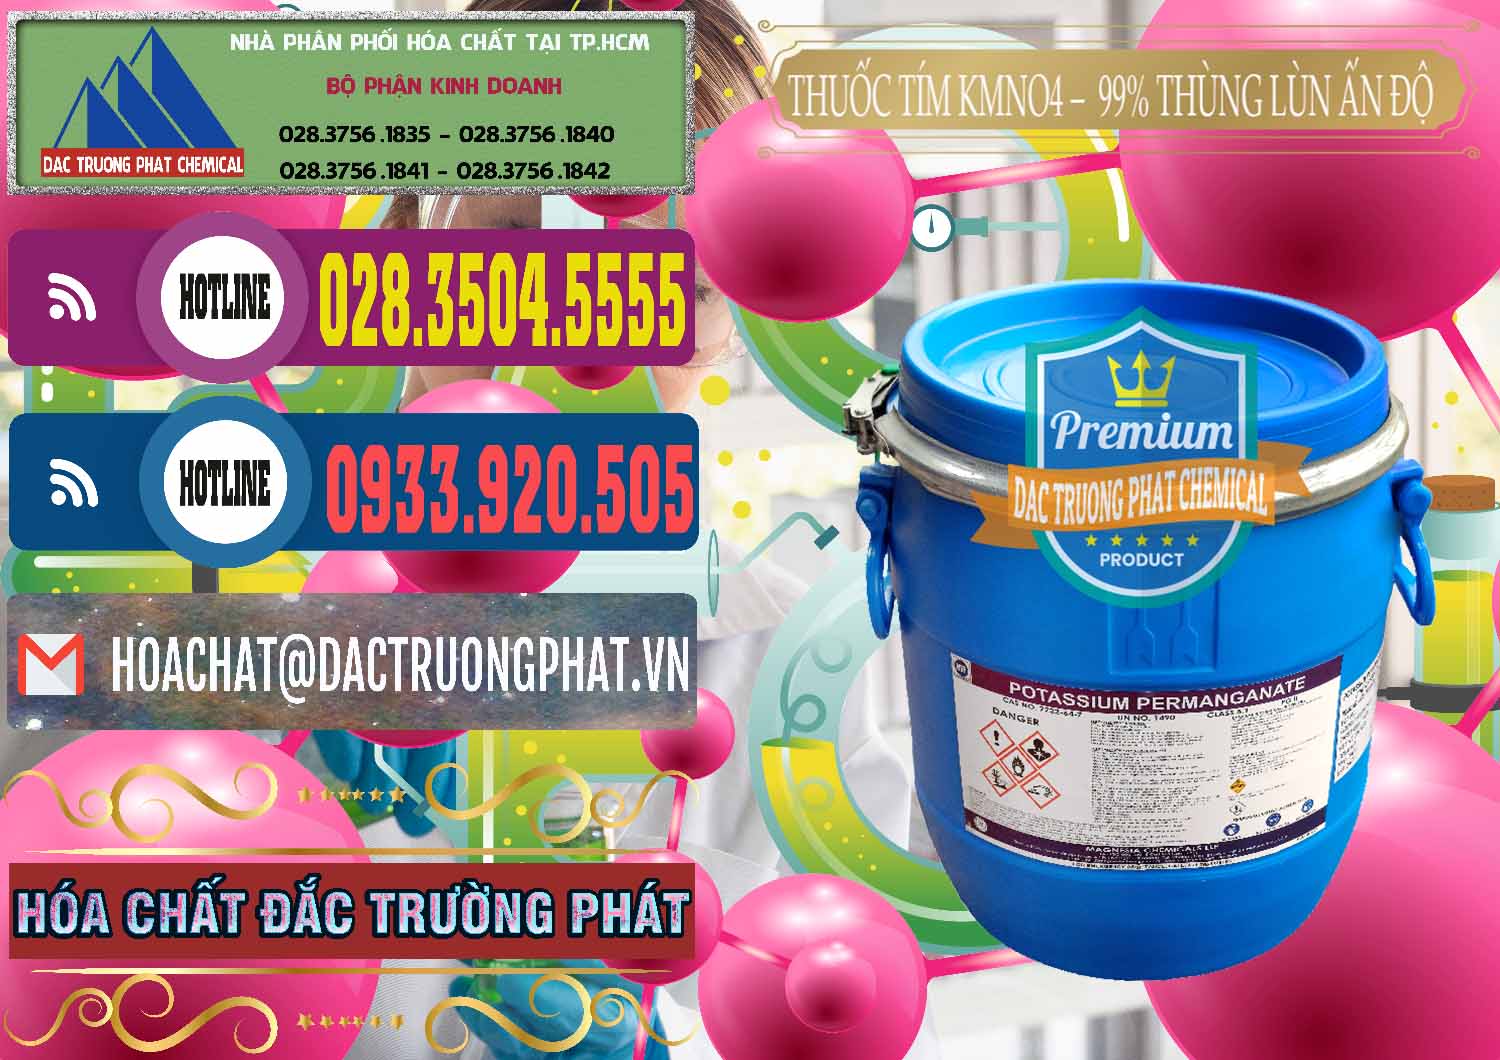 Đơn vị bán _ cung cấp Thuốc Tím - KMNO4 Thùng Lùn 99% Magnesia Chemicals Ấn Độ India - 0165 - Nơi chuyên cung cấp - nhập khẩu hóa chất tại TP.HCM - muabanhoachat.com.vn